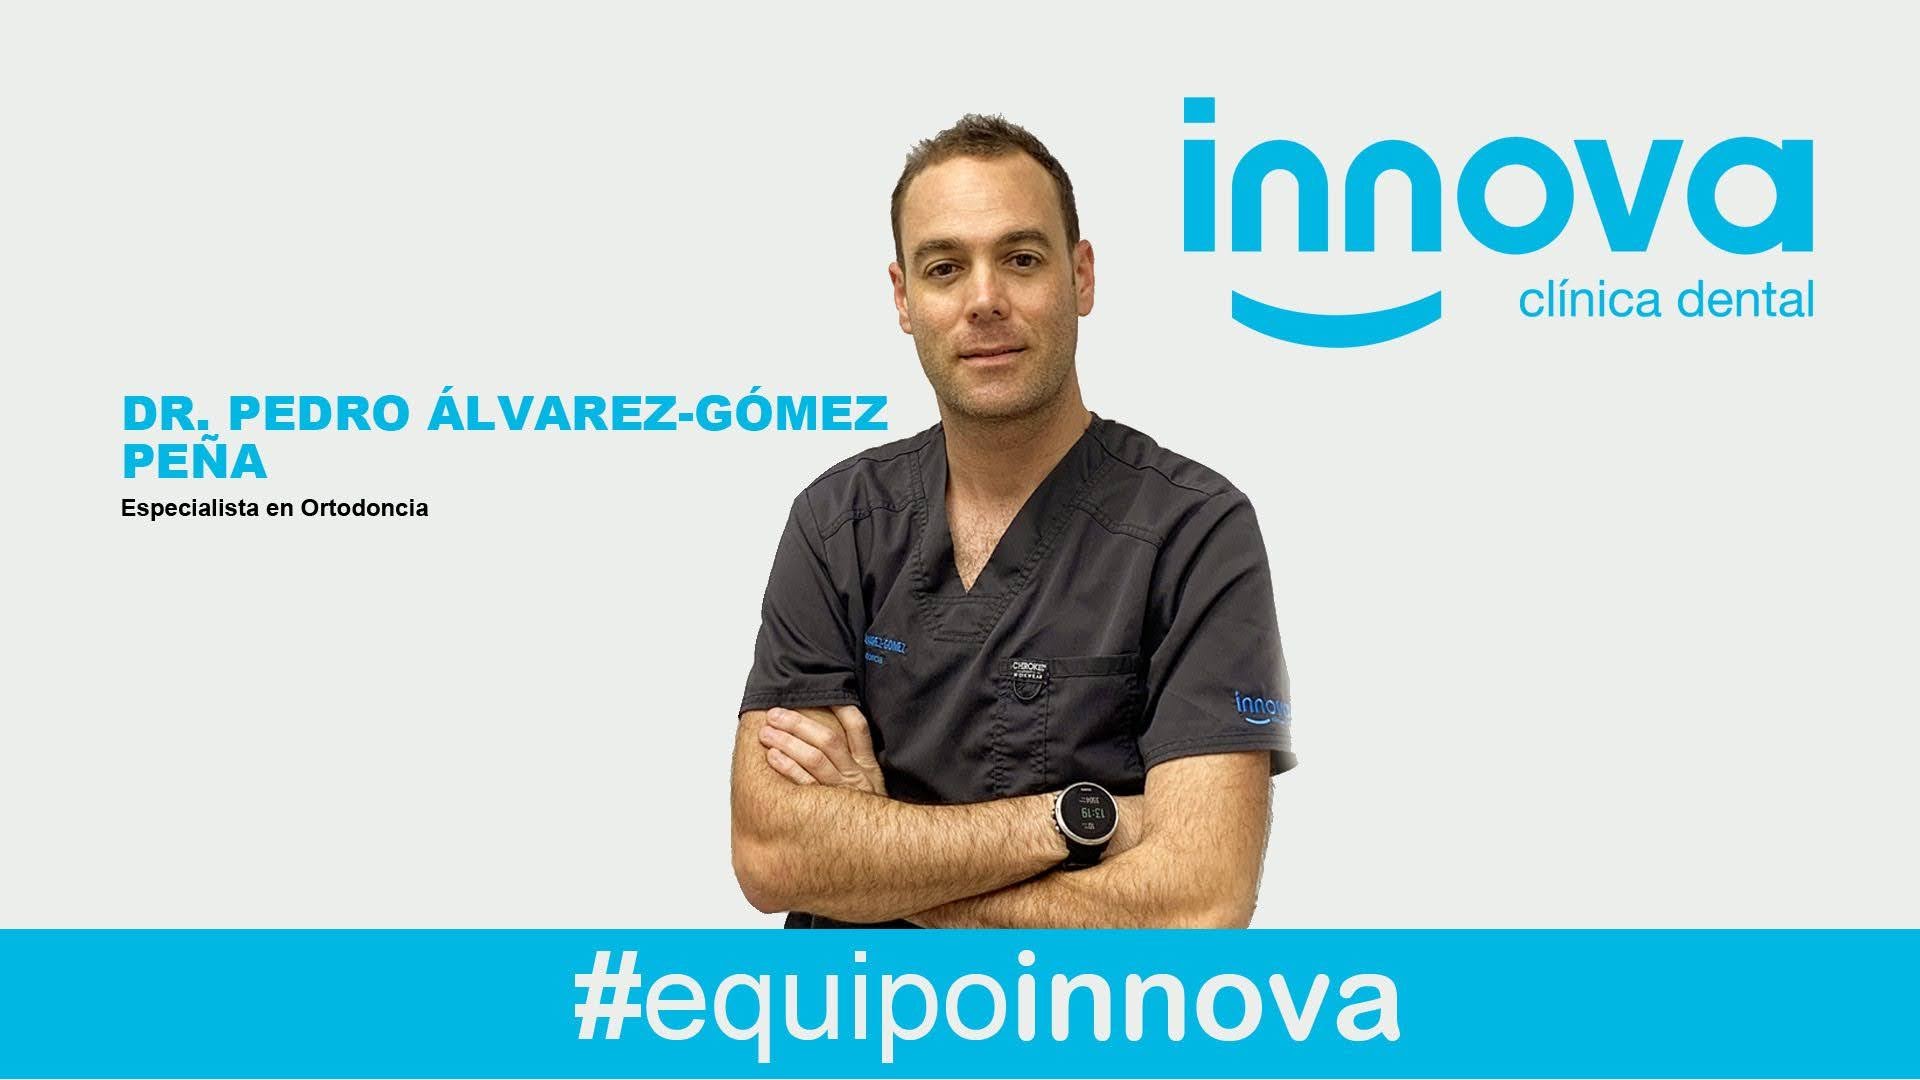 Clinica Innova Dental <br> Dr. Pedro Álvarez Gómez Peña